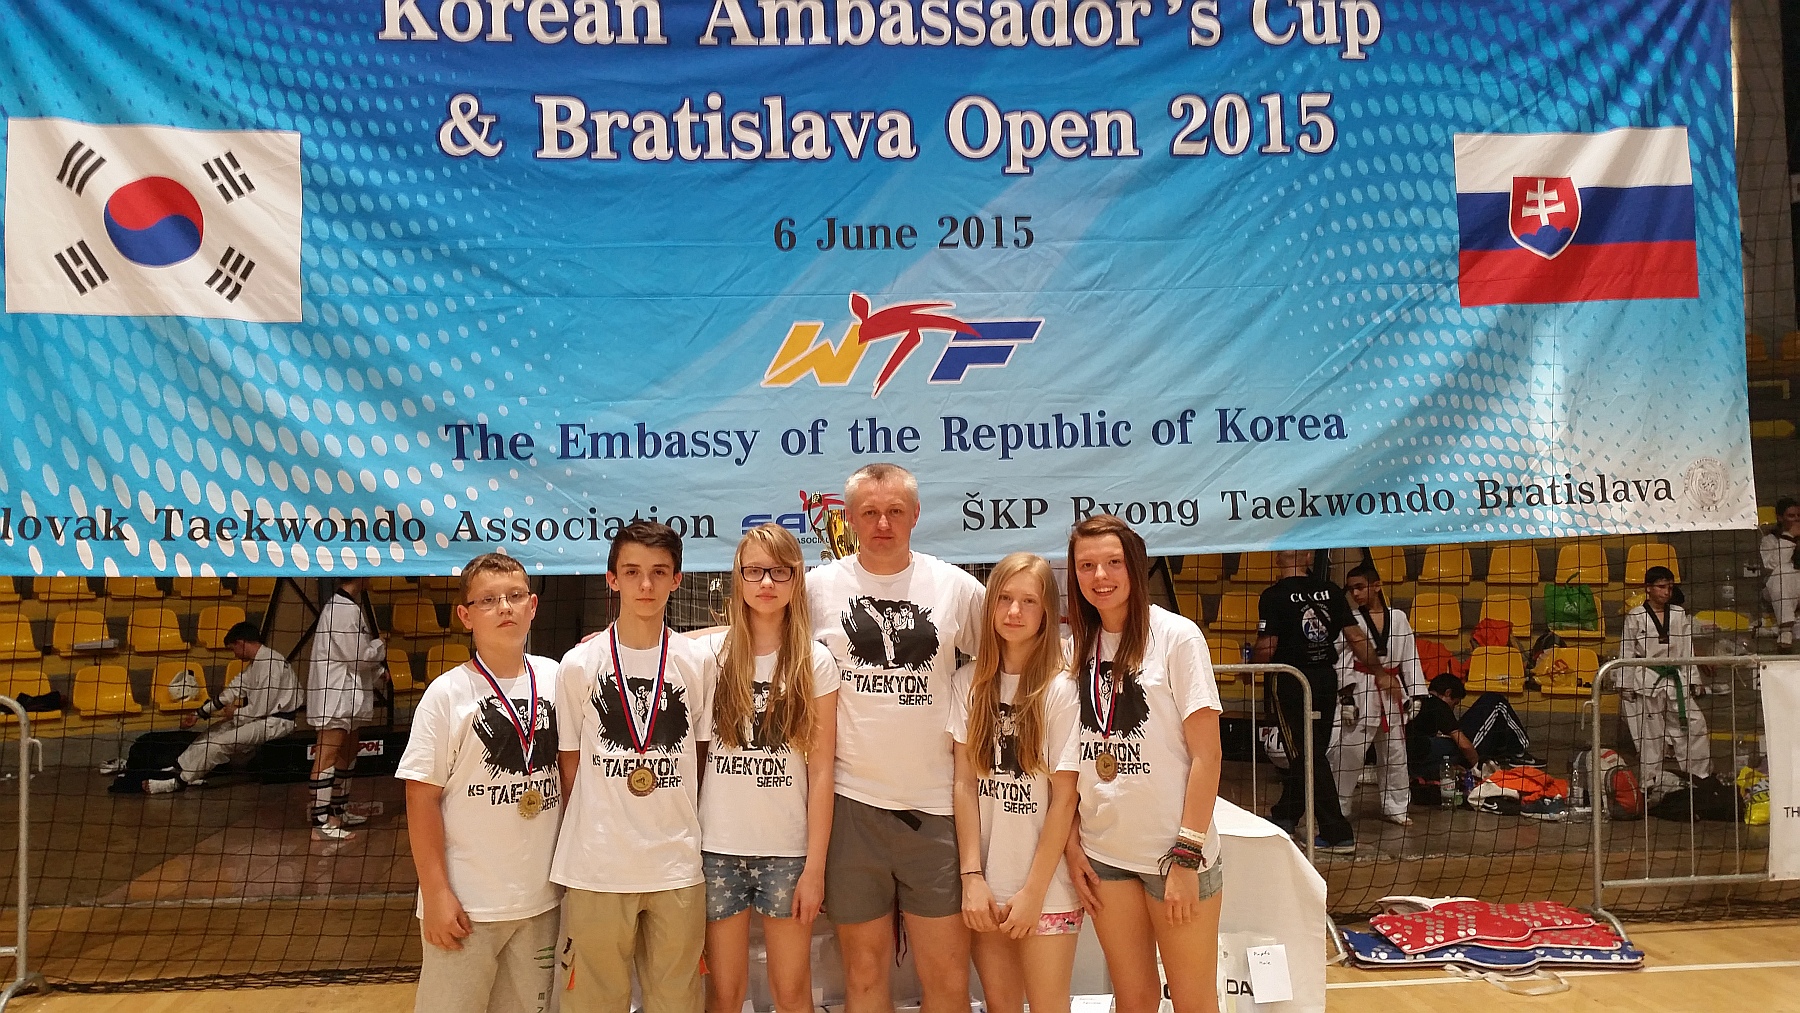 Otwarte Międzynarodowe Mistrzostwa Słowacji - Bratislava Open 2015 w taekwondo olimpijskim z udziałem KS Taekyon Sierpc, 5-6.06.2015 r.